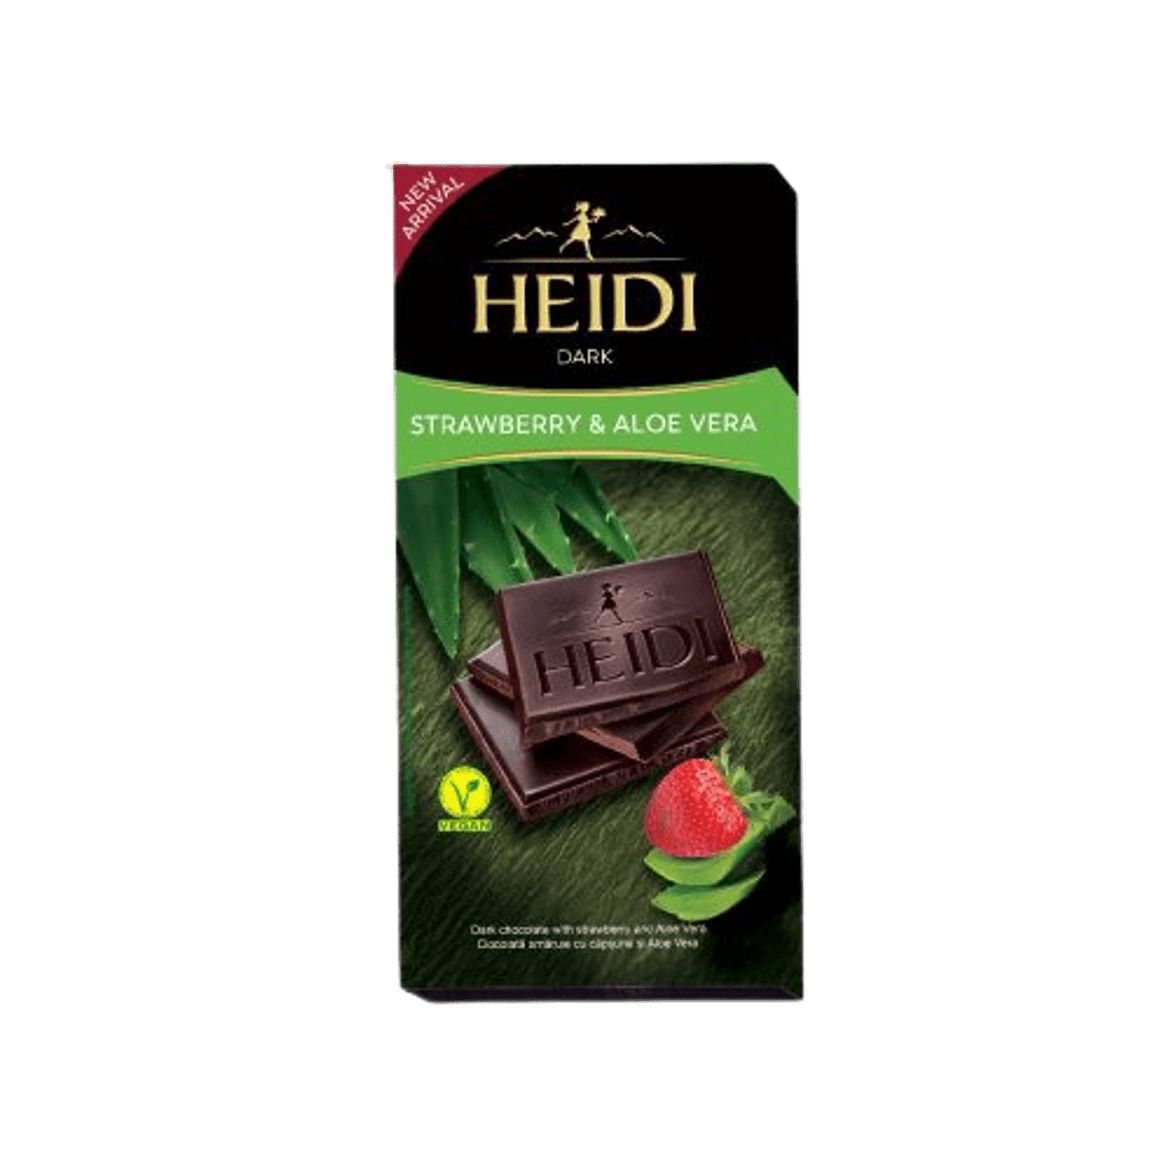 Heidi Strawberry & Aloe Vera étcsokoládé